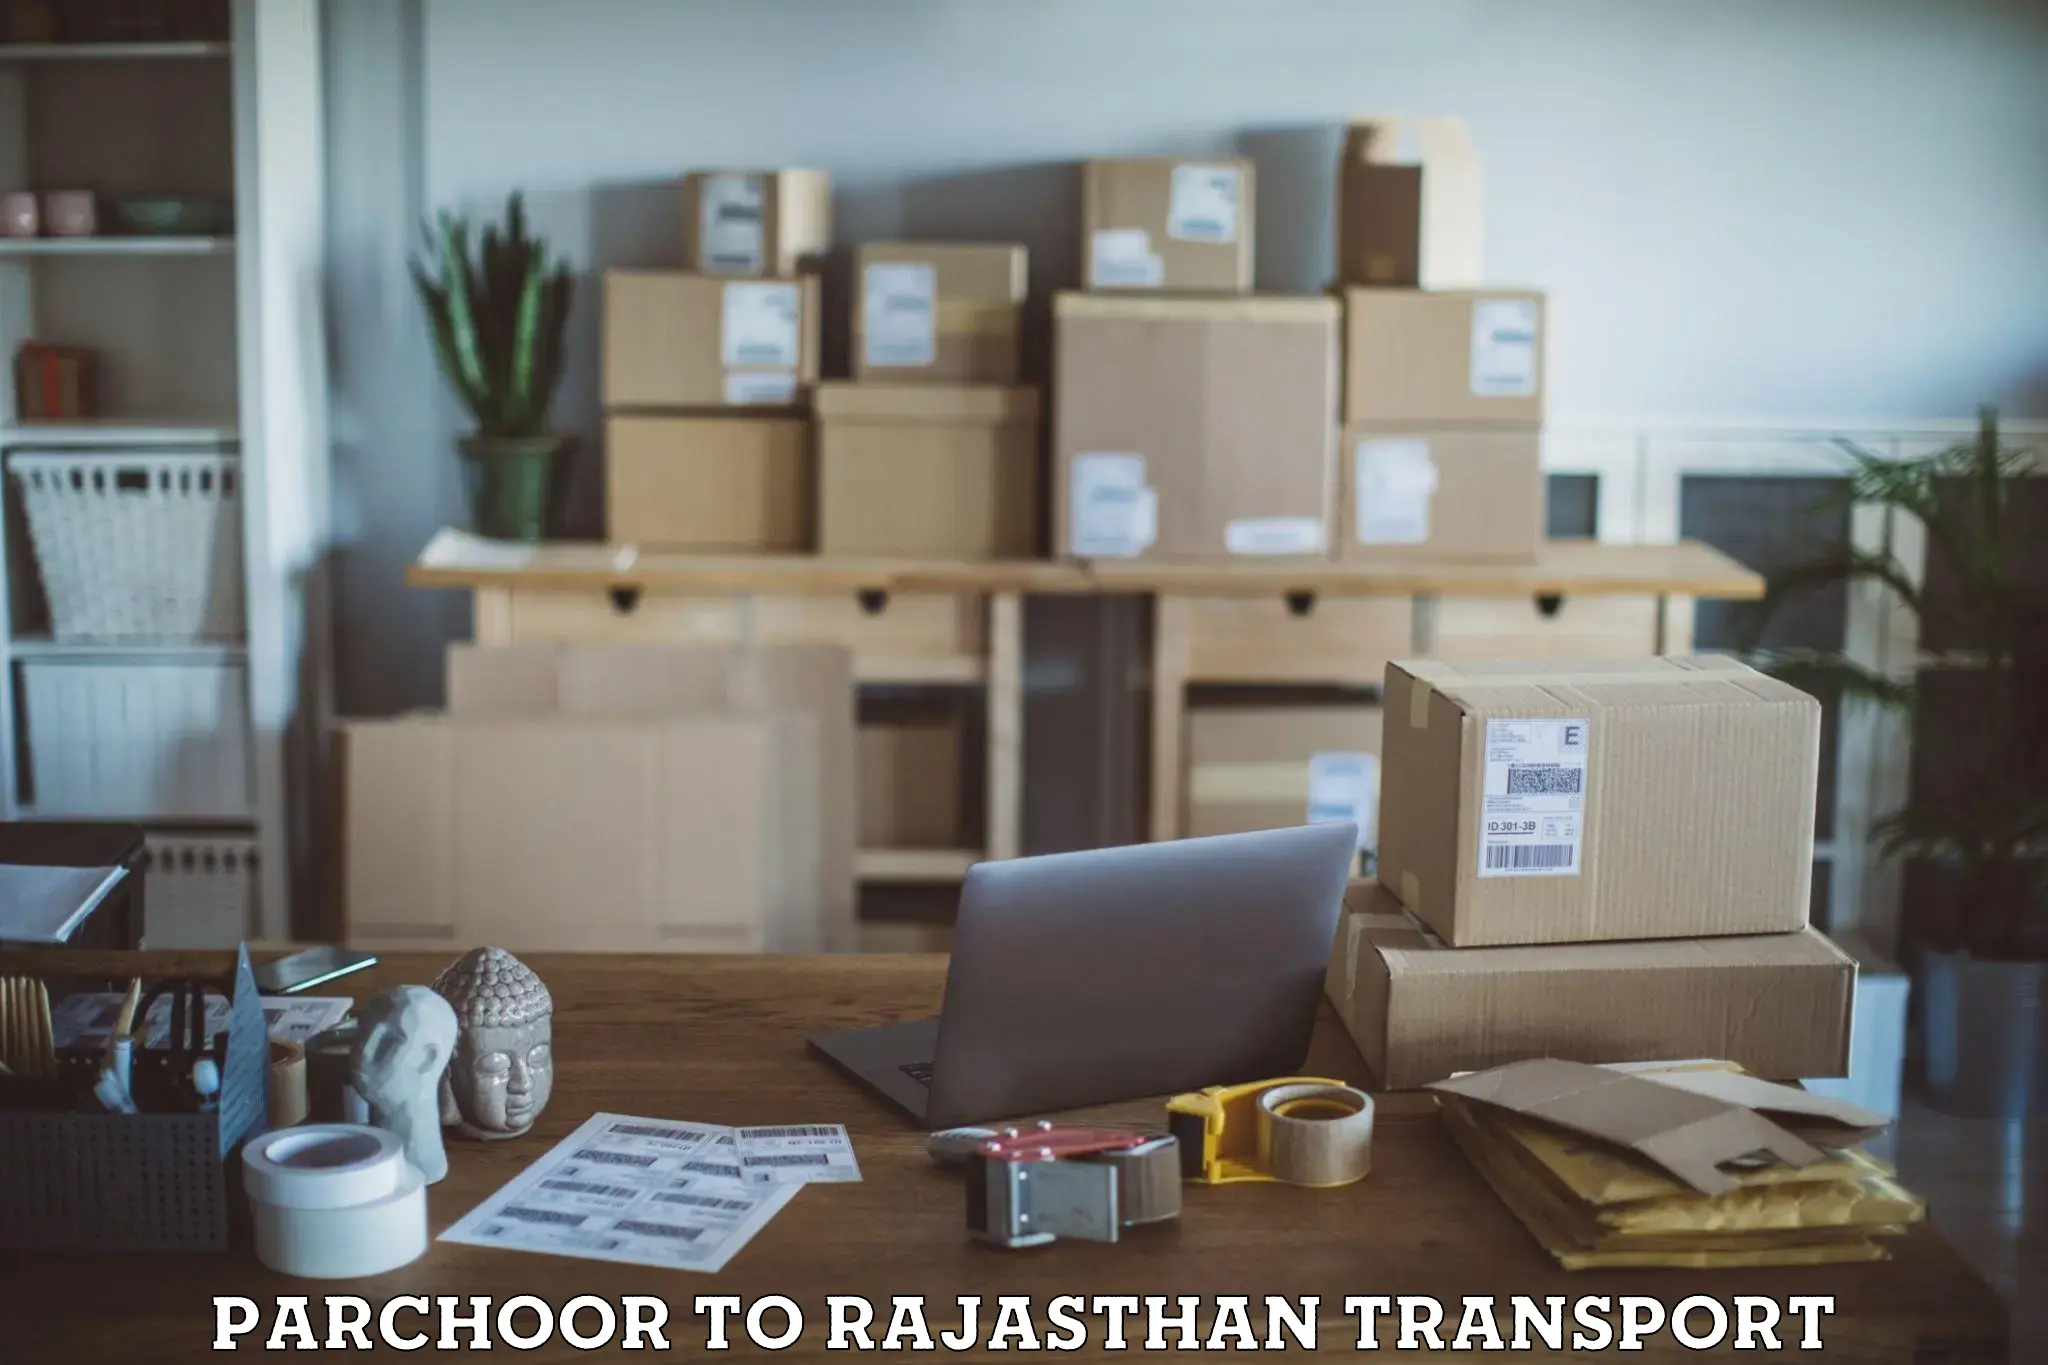 Delivery service Parchoor to Raisingh Nagar